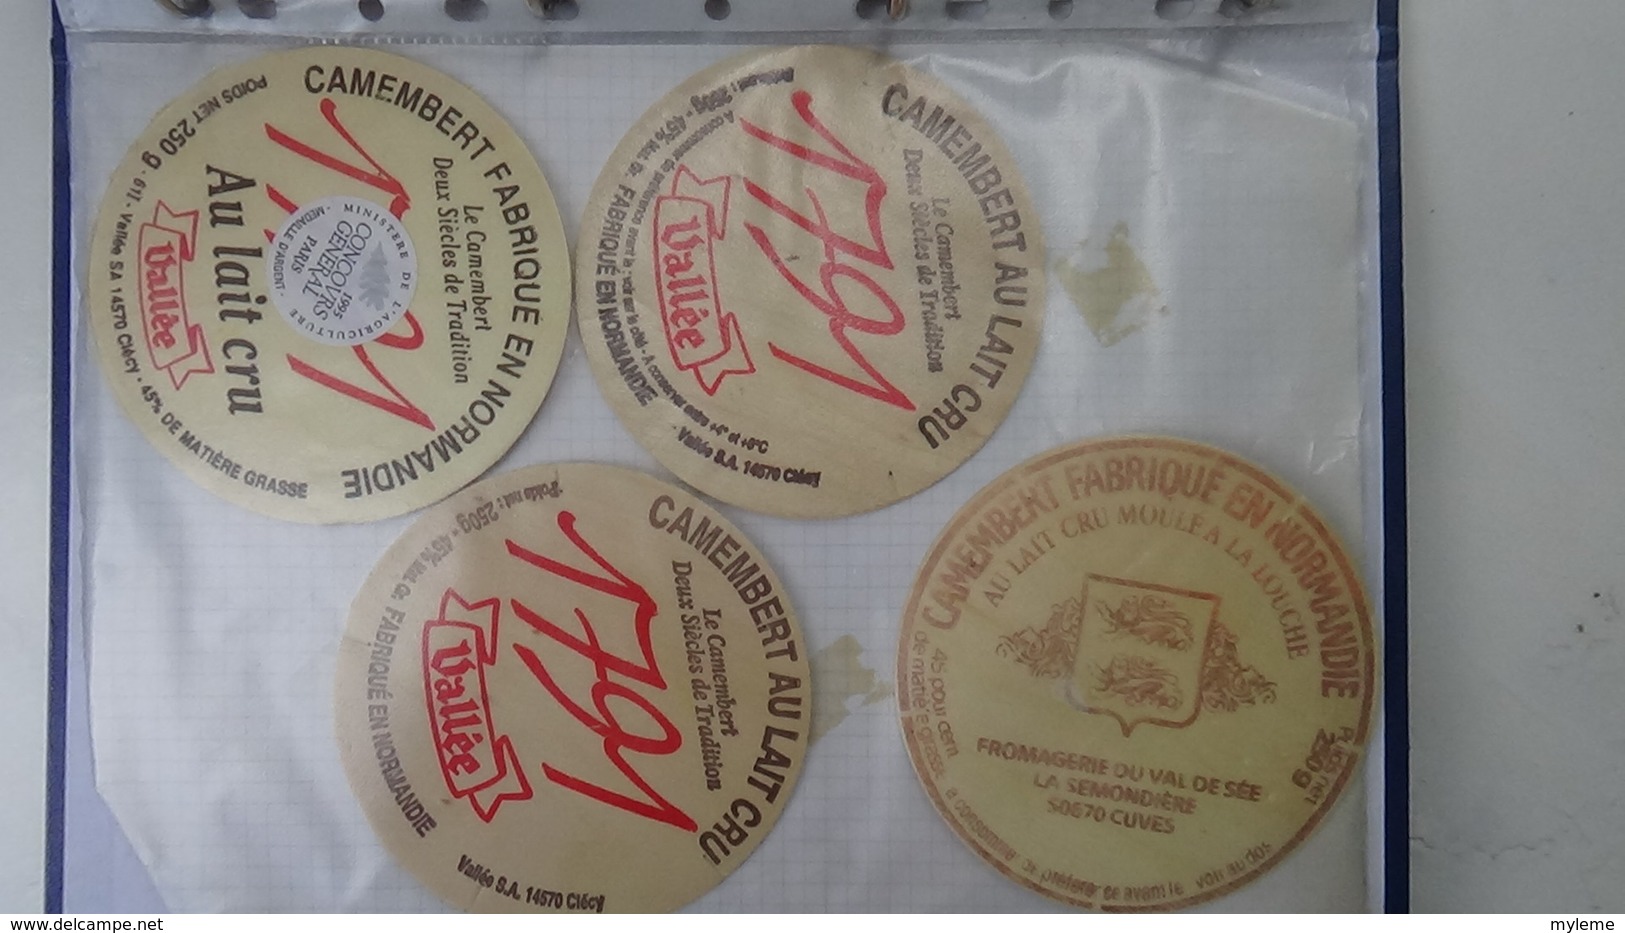 Grosse collection de couvercles et étiquettes (62 dans ce classeur) de fromages Français.1/10 Voir commentaires !!!